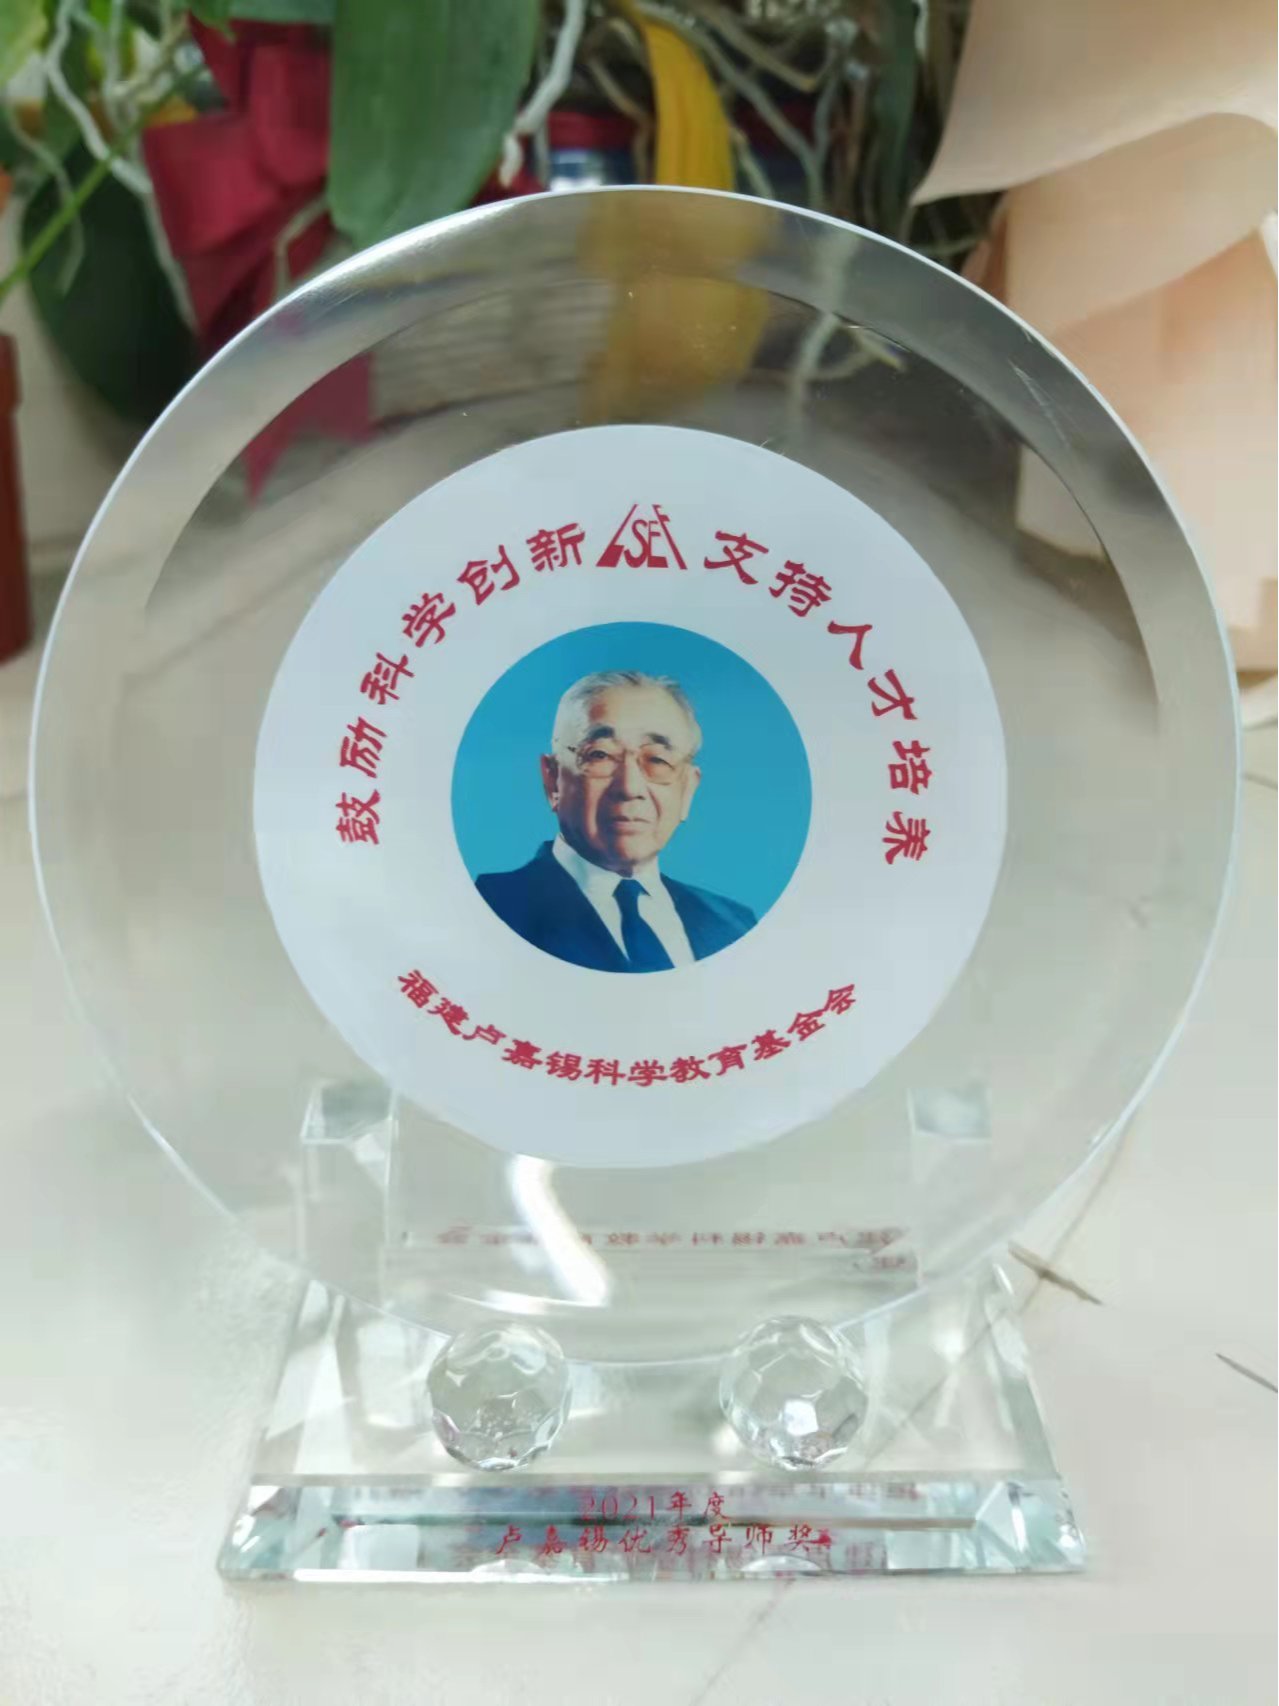 江莉龙教授荣获“卢嘉锡优秀导师奖”